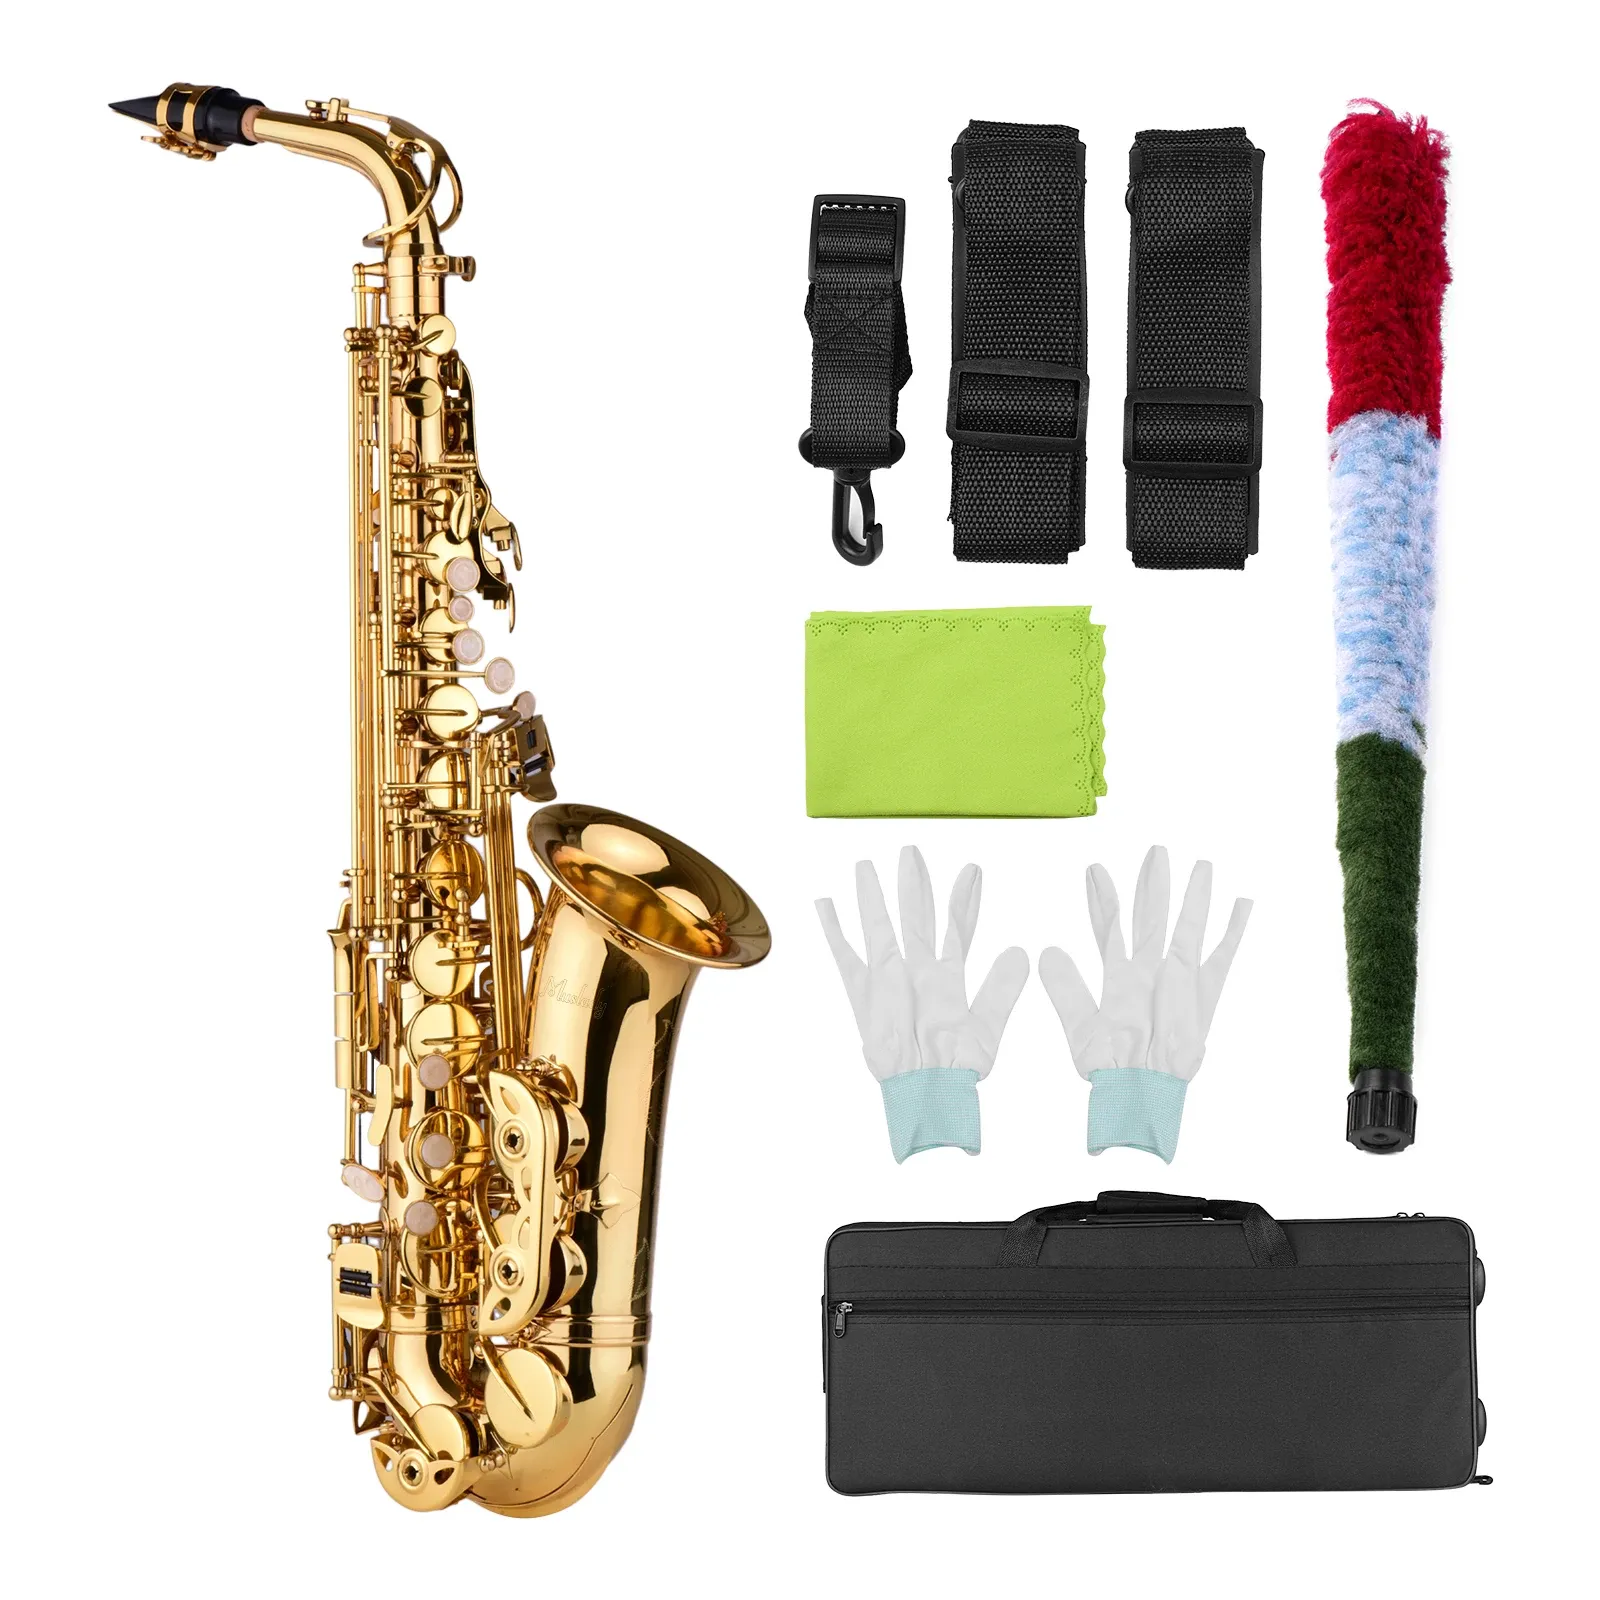 Saxophone Alto Mib en laiton laqué or, Instrument à vent plat avec sac de transport, gants, sangles, brosse d'accessoires de saxophone